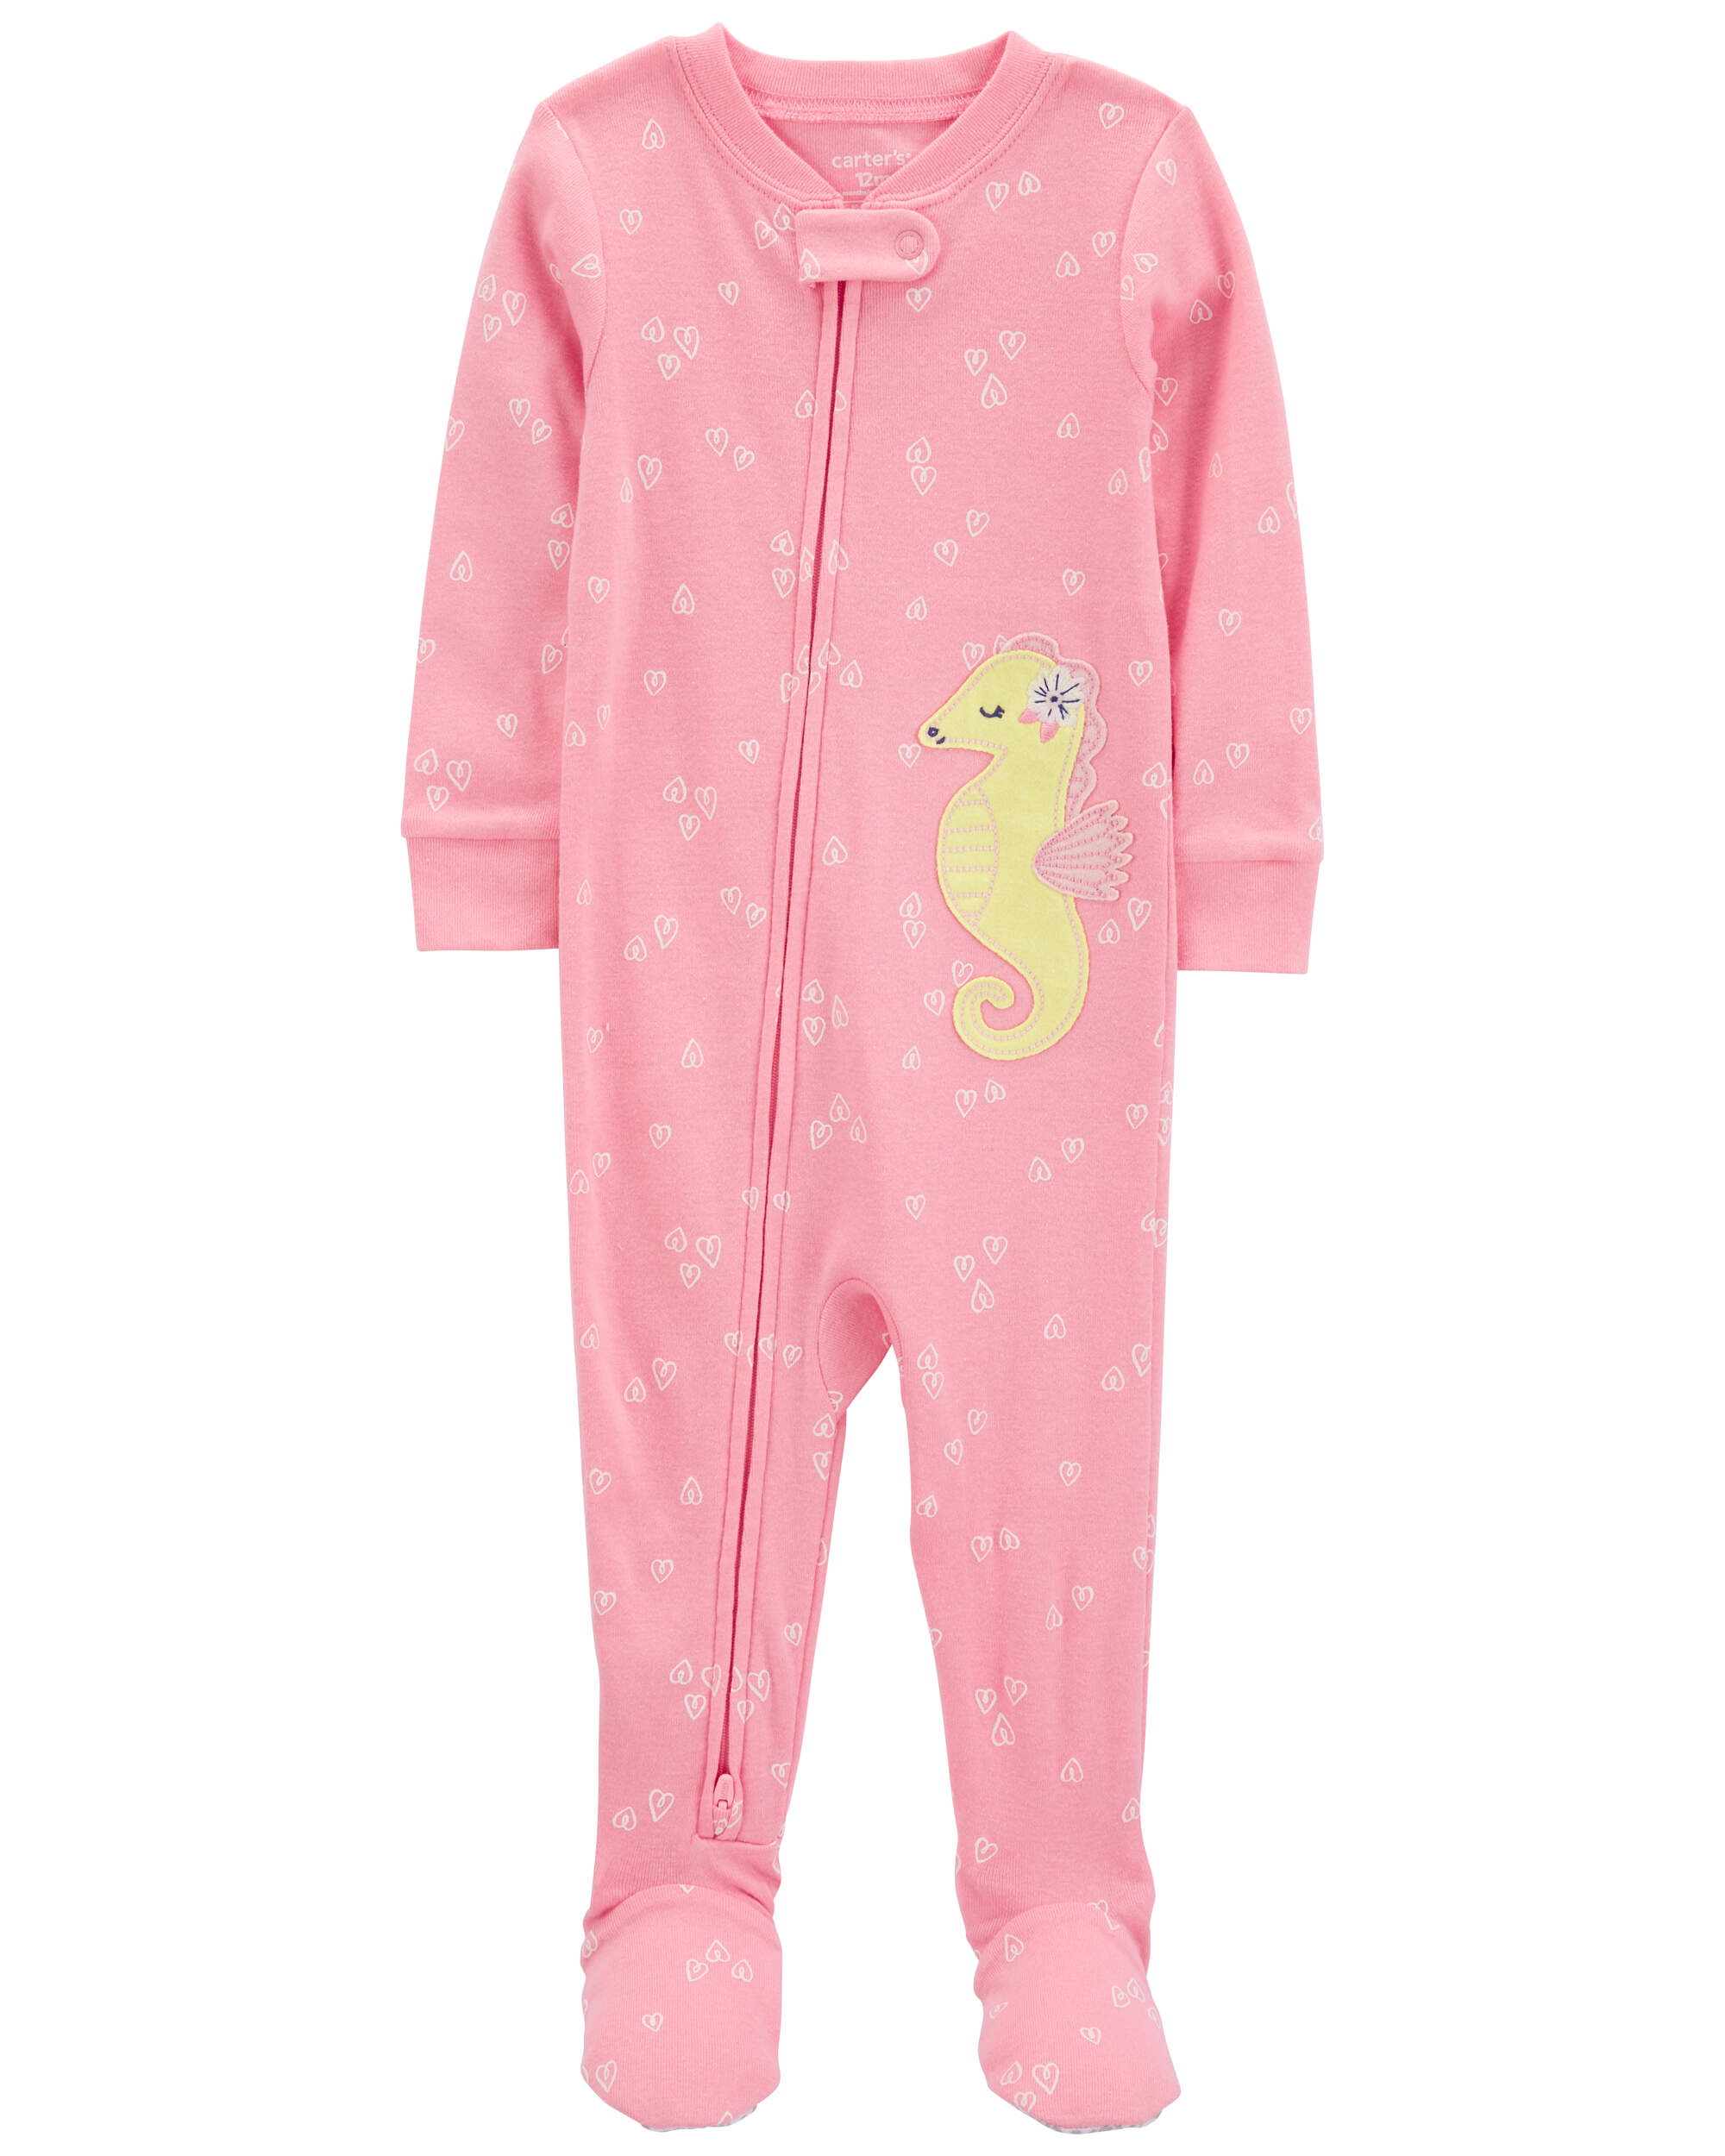 Baby 1-Piece Sea Horse 100% Snug Fit Cotton Footie Pyjamas